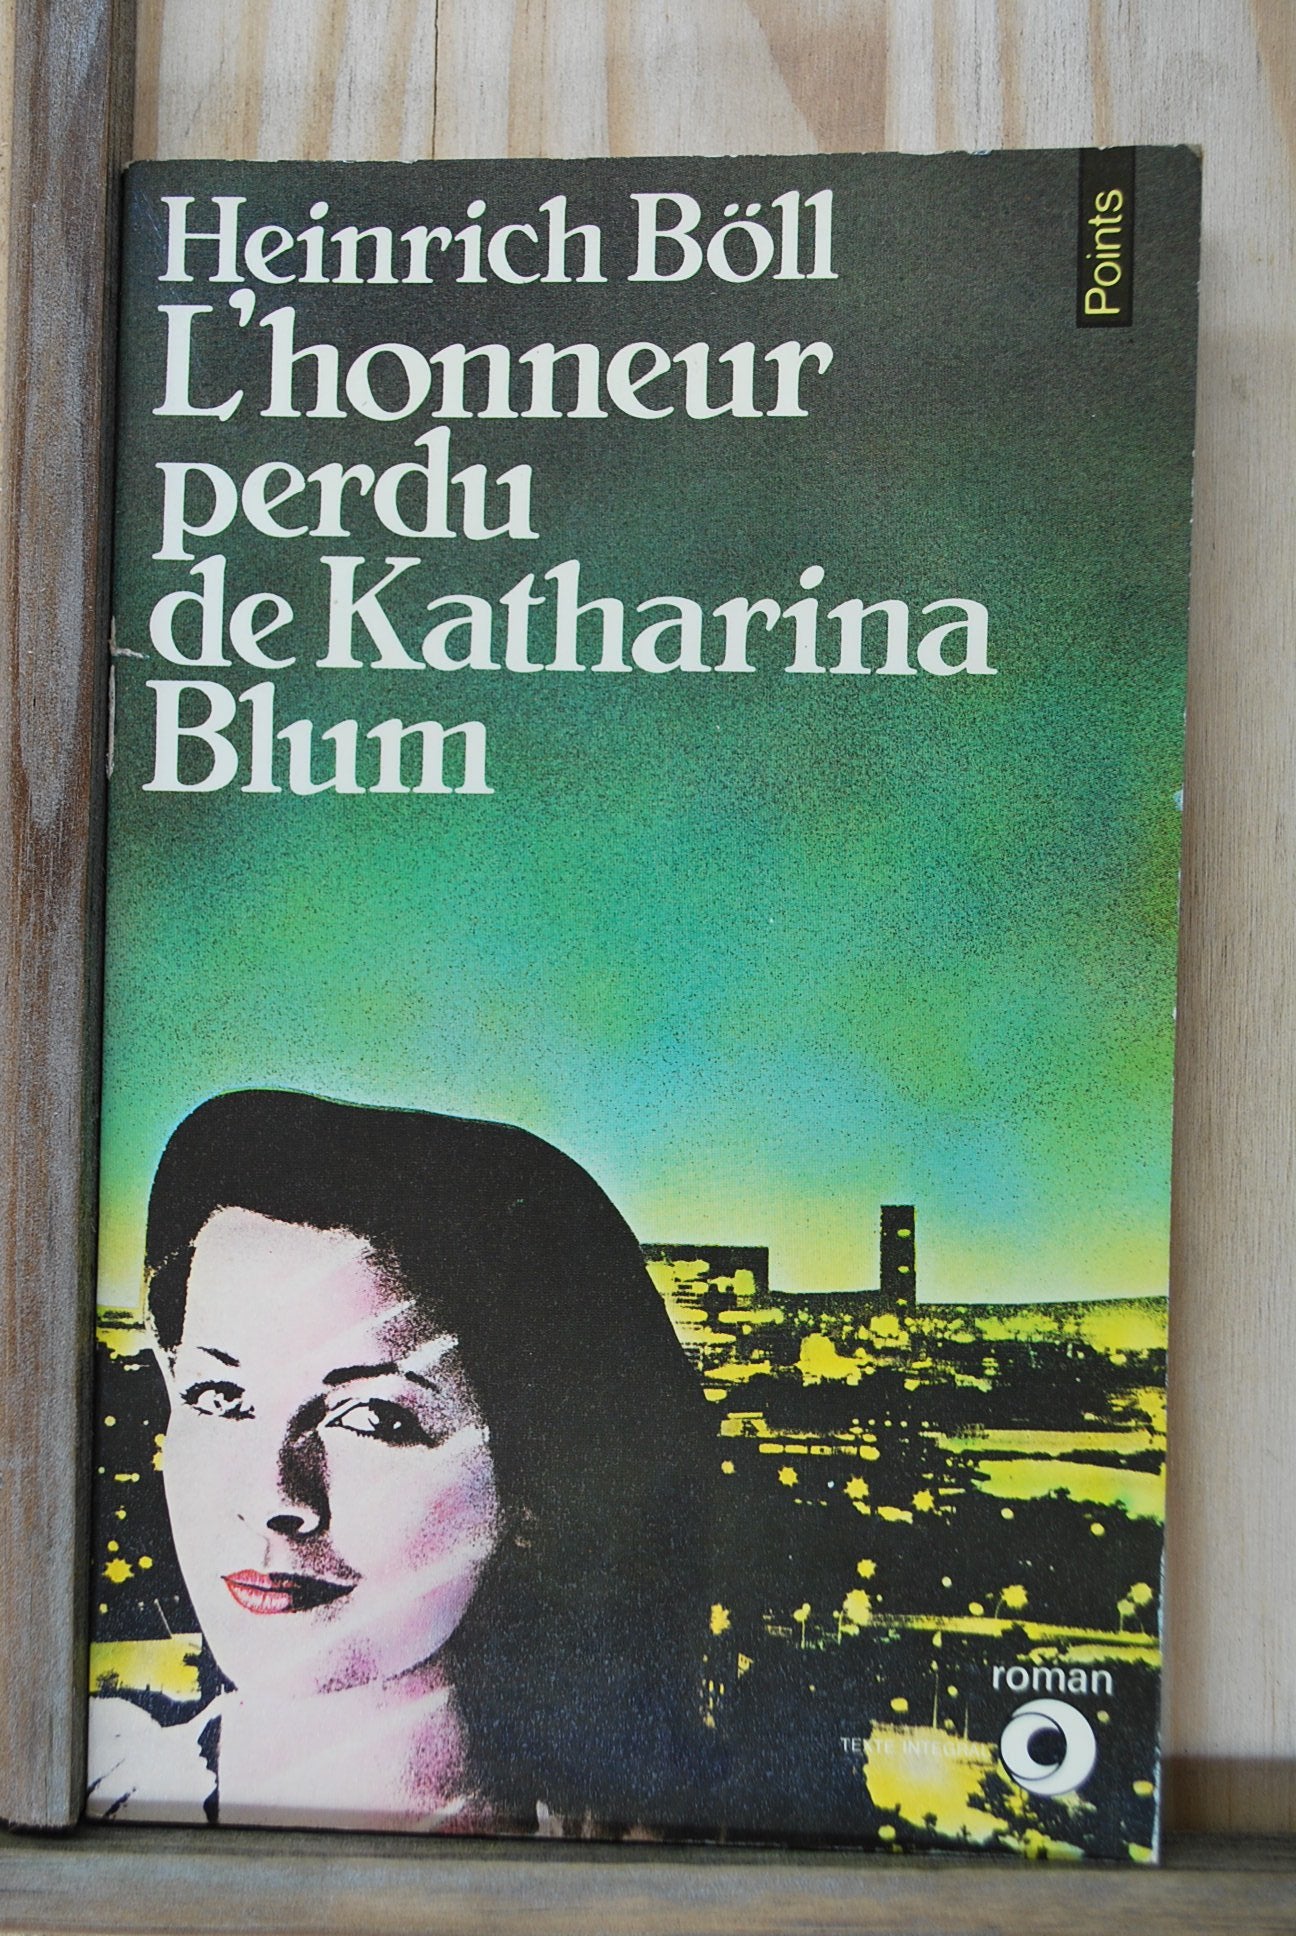 Livre - L'Honneur perdu de Katharina Blum: Ou Comment peut naître la violence de Heinrich Böll